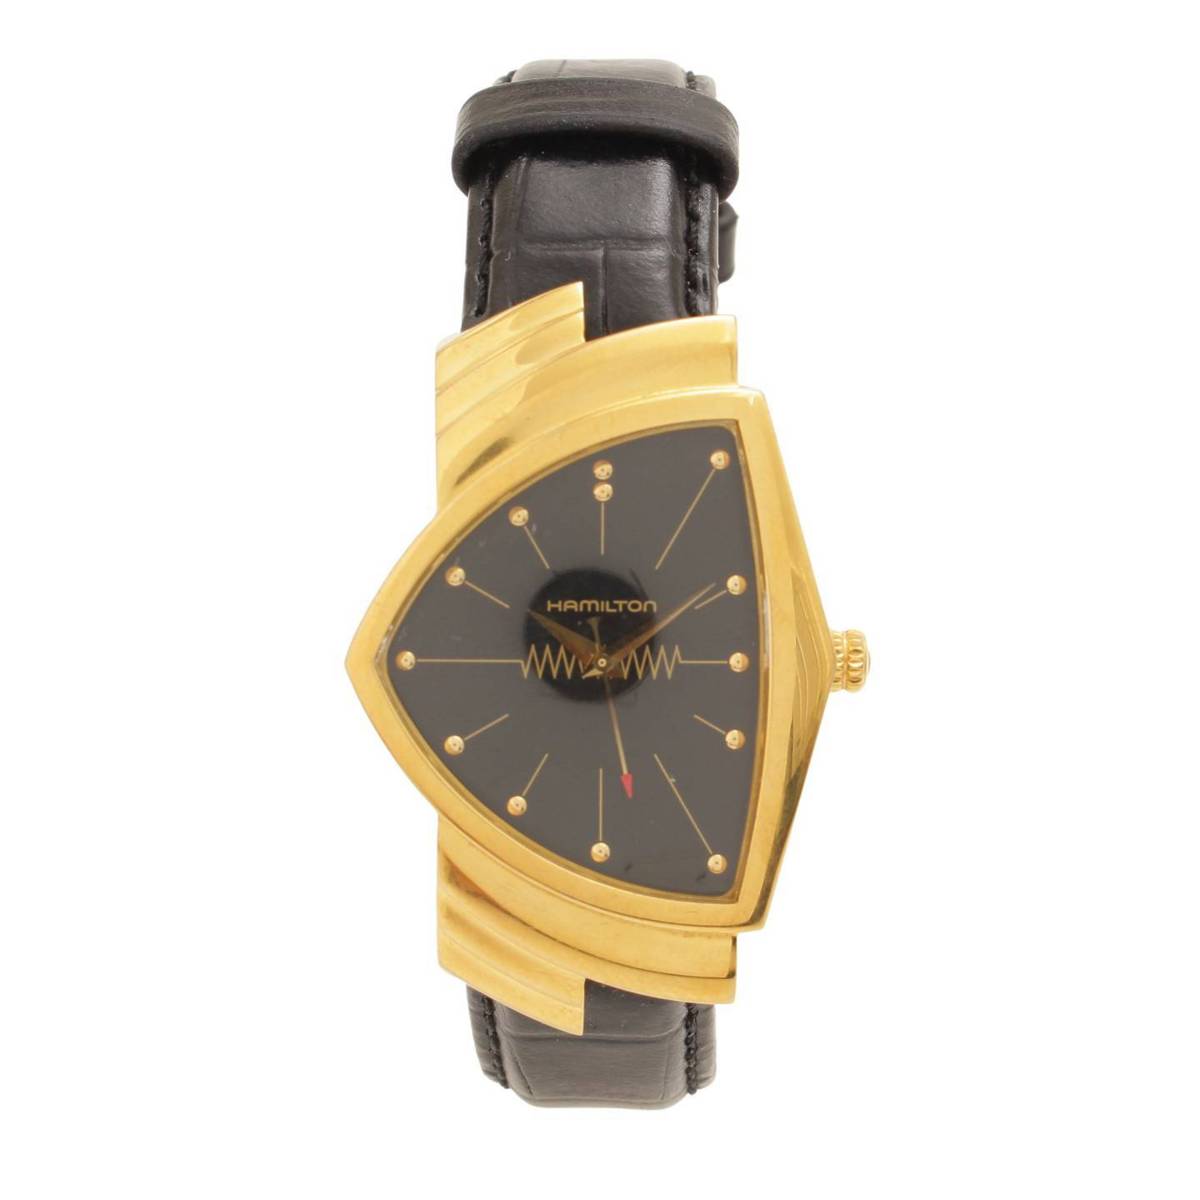 ハミルトン(Hamilton) ベンチュラ クオーツ 腕時計 H243010 ゴールド 